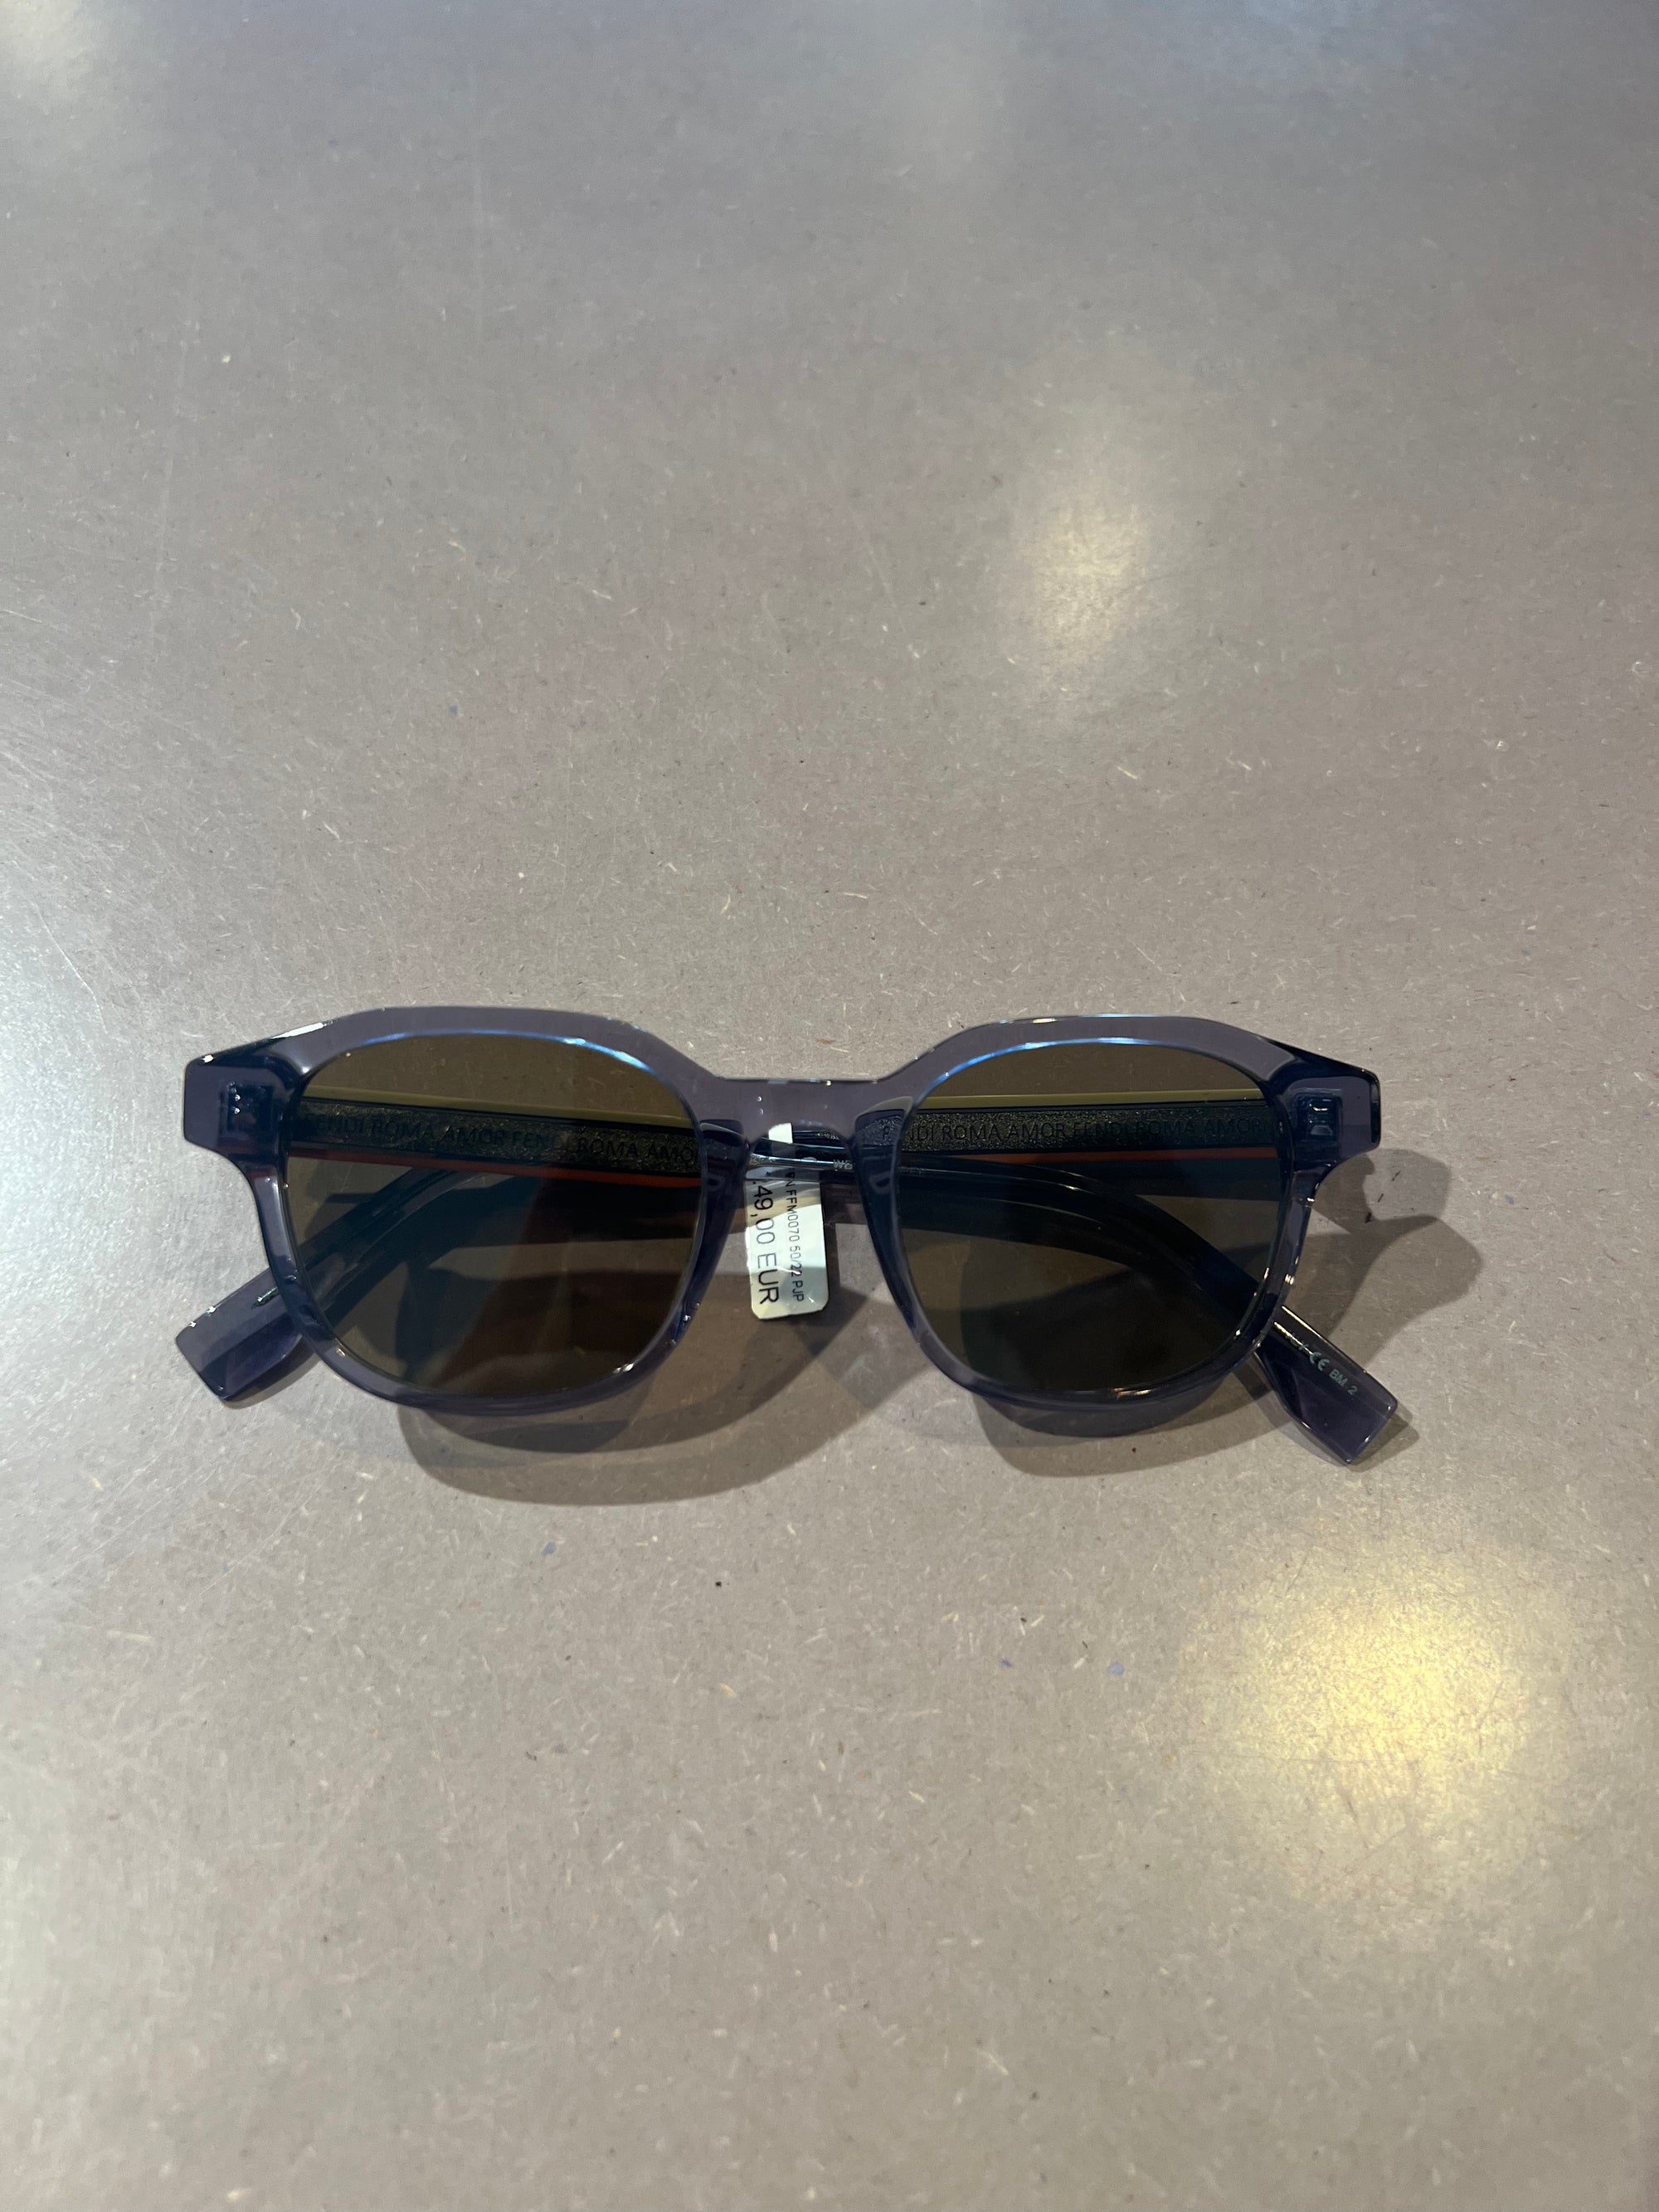 Auf dem Bild ist ein Produktbild der Fendi Roma Sonnenbrille von vorne vor Grauem Hintergrund zu sehen.